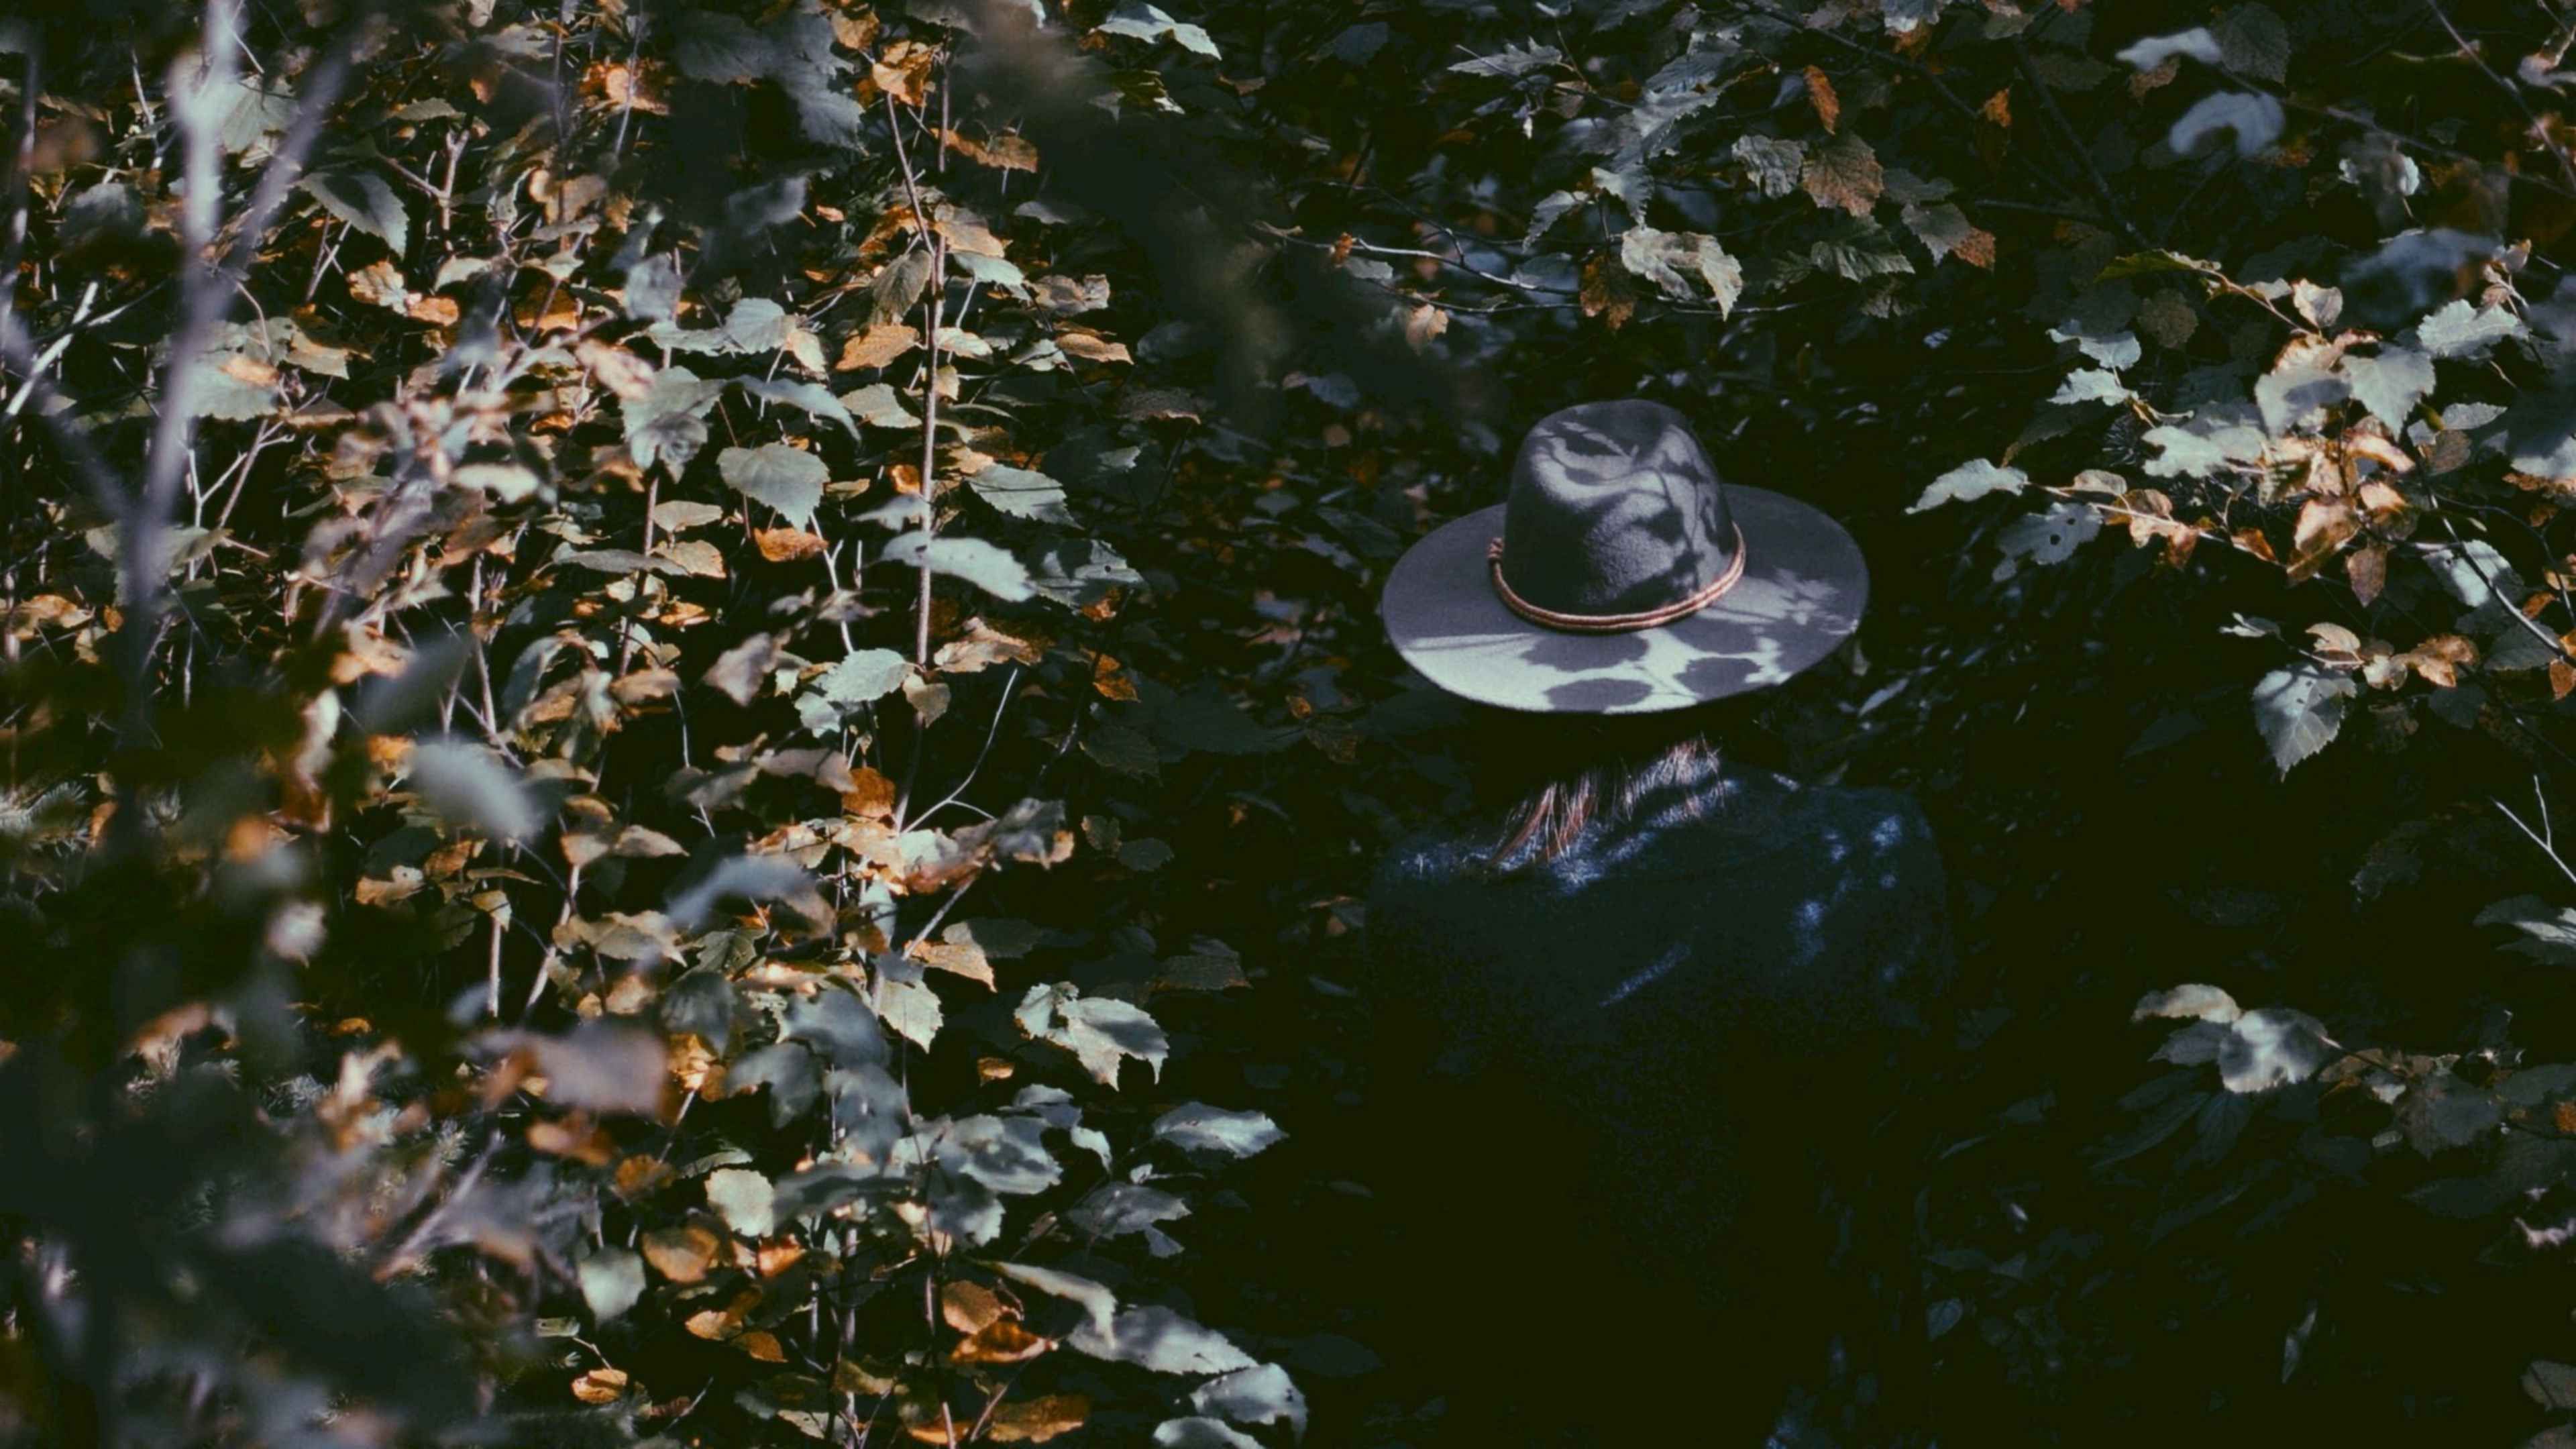 Шляпа тень. Шляпа с листьями. Тень от листвы. Тень человека в шляпе. Фон с тенью от листьев.